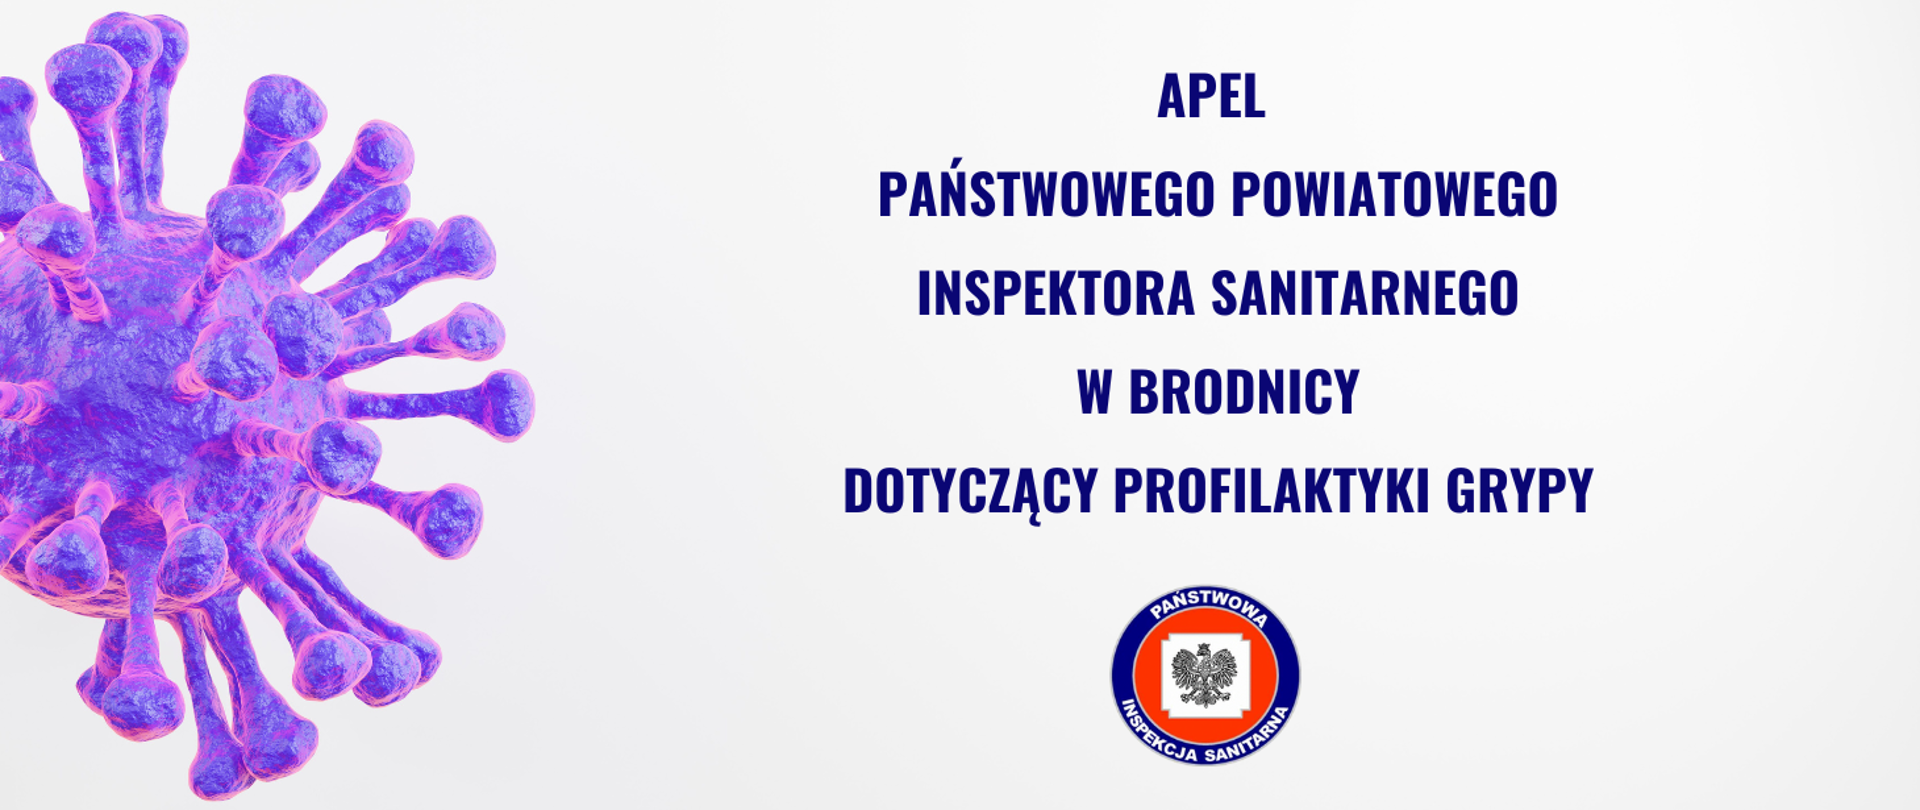 Apel Państwowego Powiatowego Inspektora Sanitarnego w Brodnicy dotyczący profilaktyki grypy